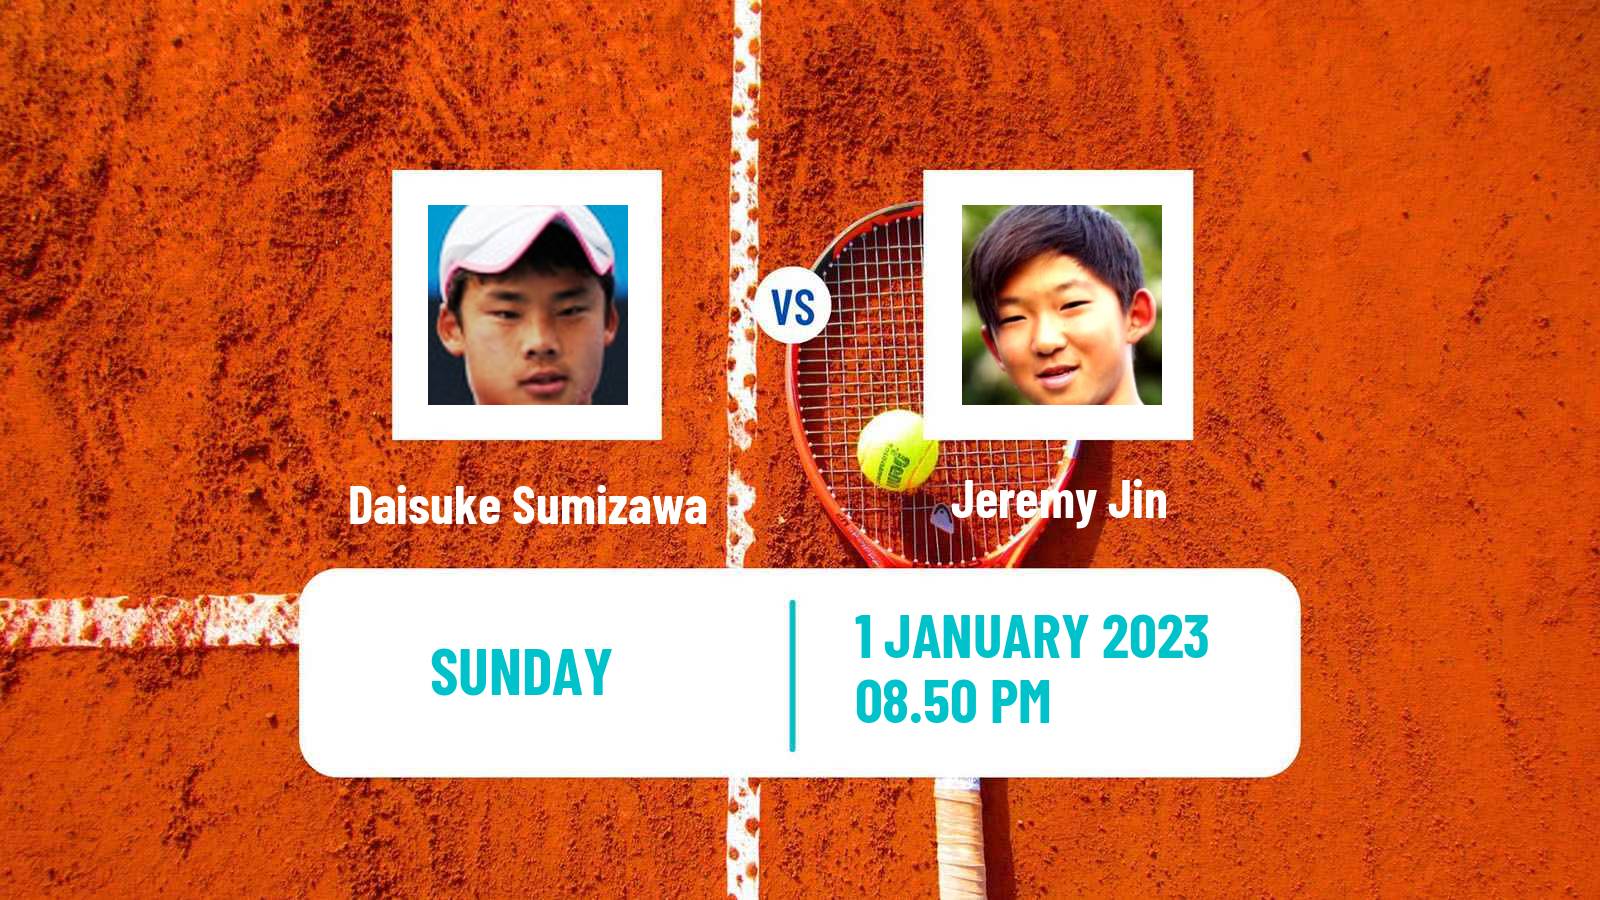 Tennis ATP Challenger Daisuke Sumizawa - Jeremy Jin